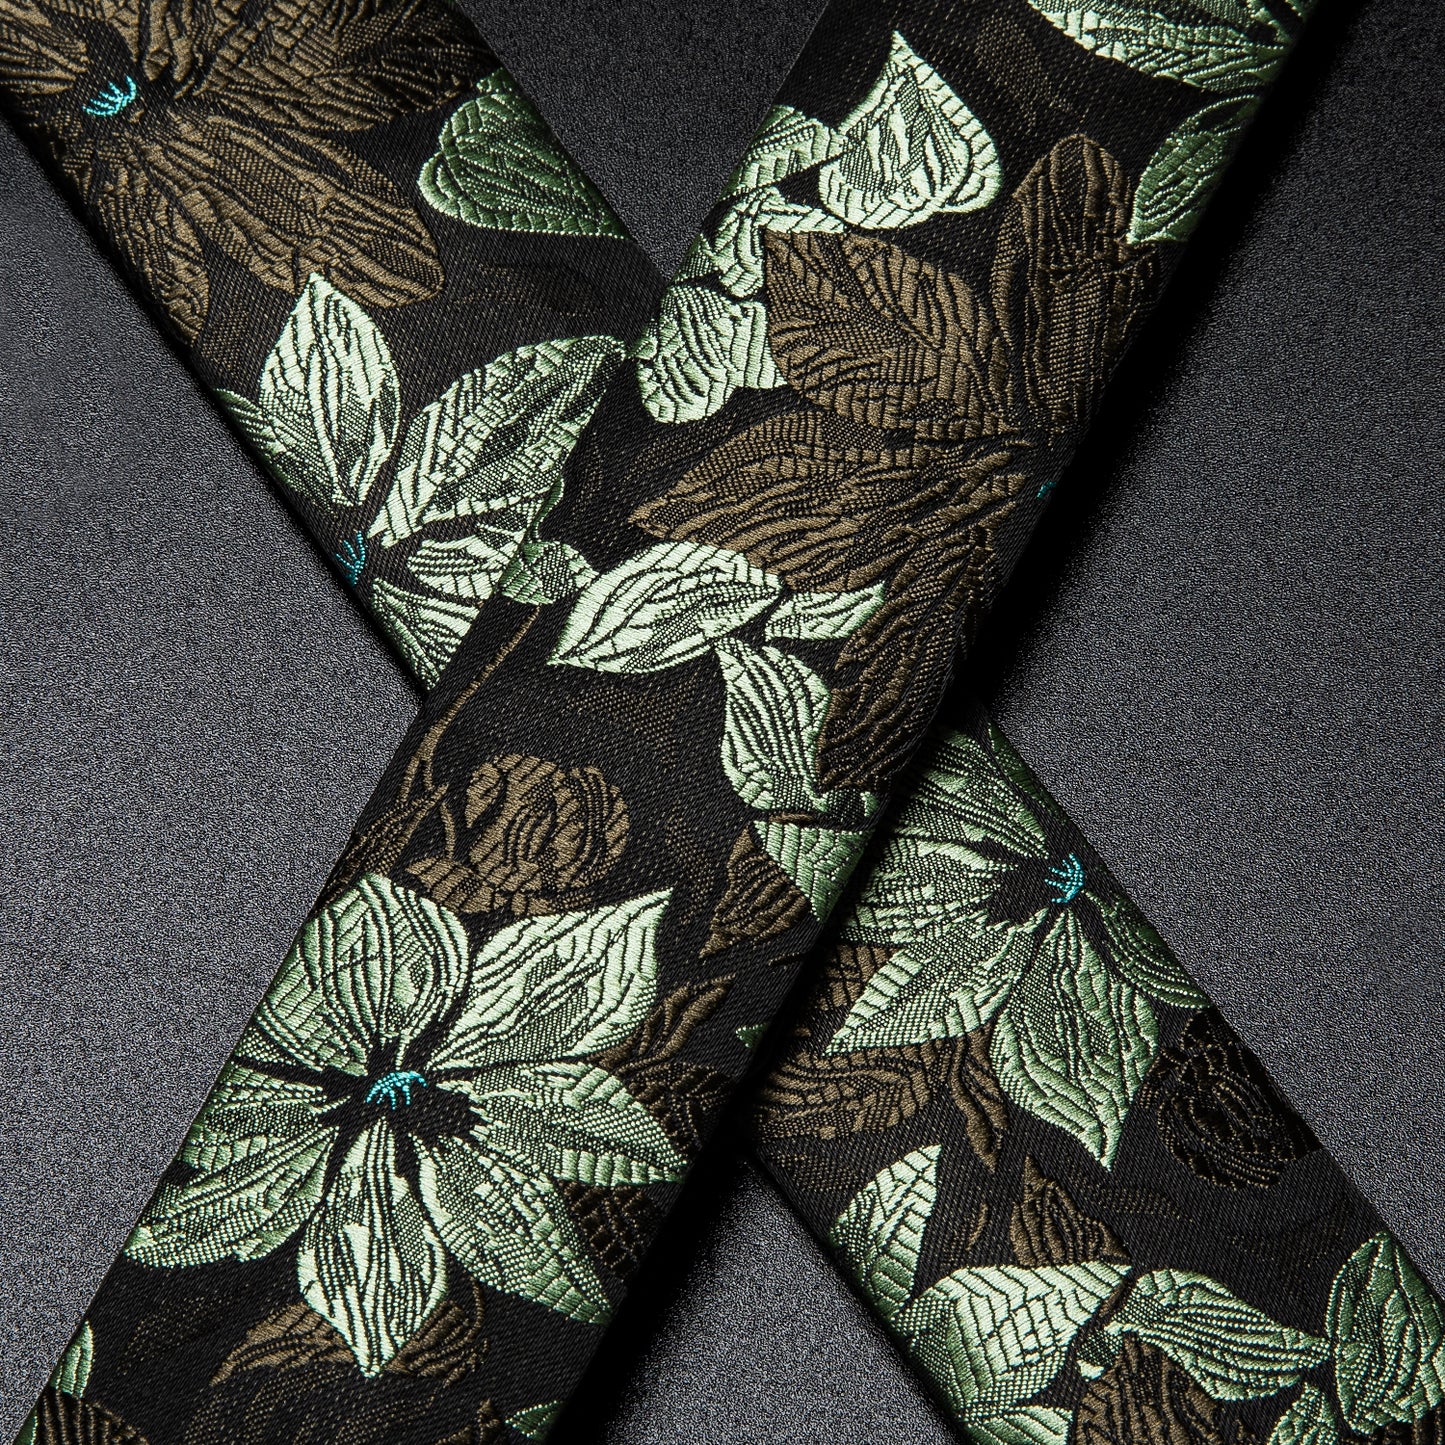 BD3050 Men's Braces Designer Clip Suspender Set [Minty Leaves]